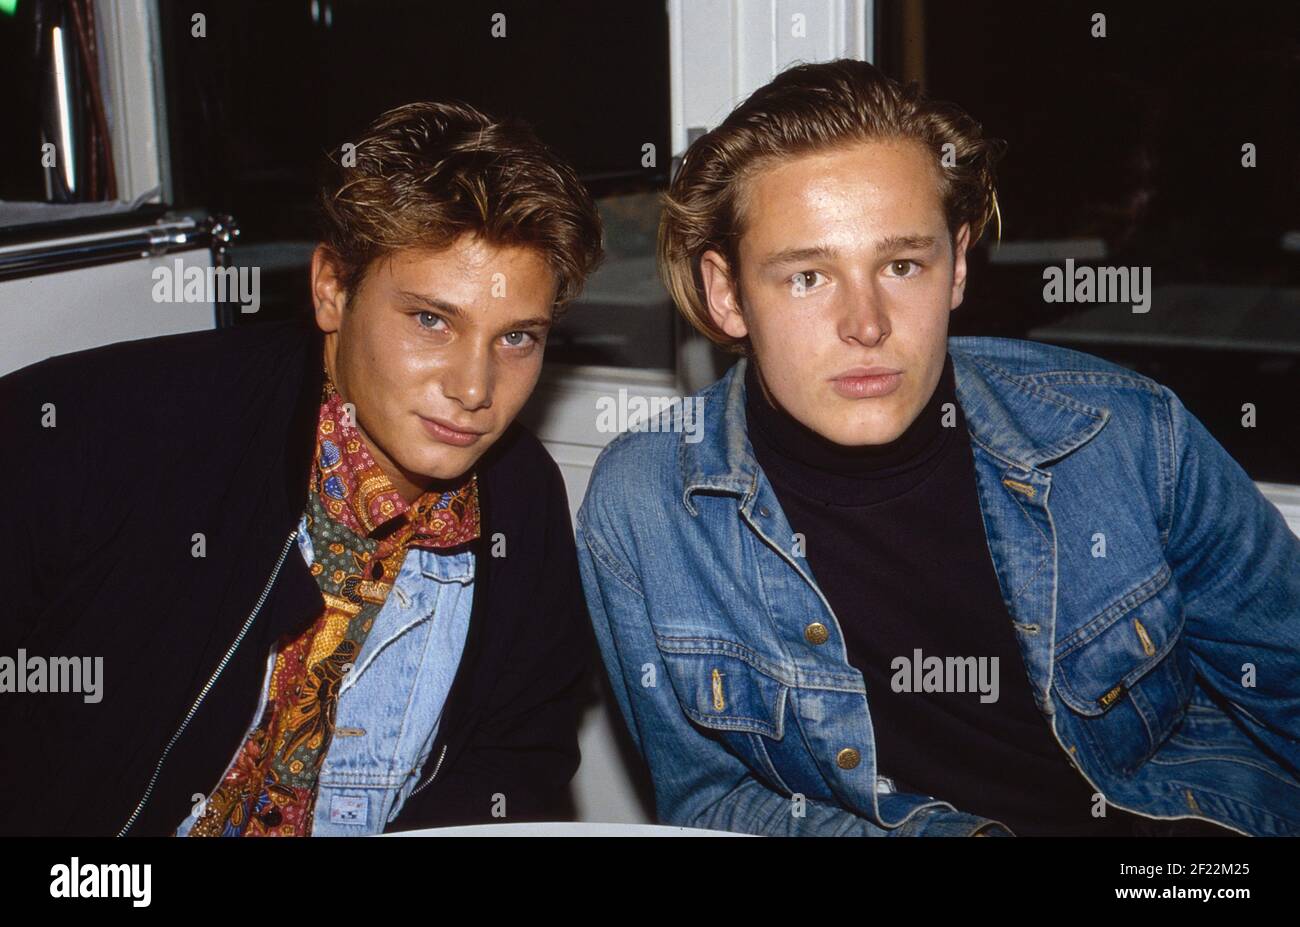 Prominenz auf der IFA in Berlin, Deutschland 1989, hier: Musiker Fabian Harloff und Schauspieler Hendrik Martz Foto Stock